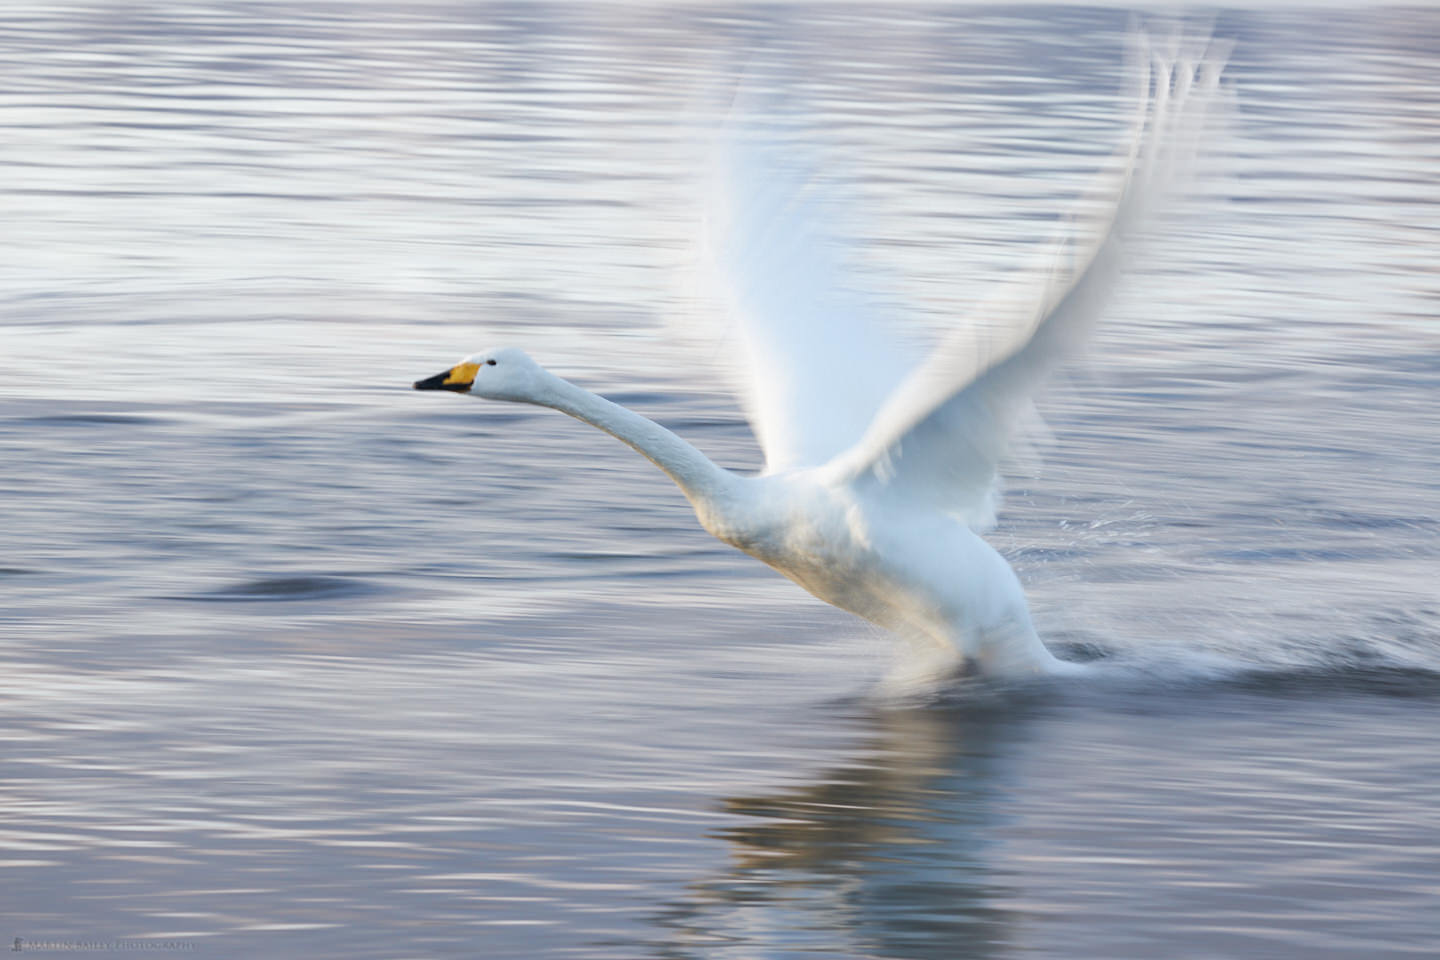 Swan Wings